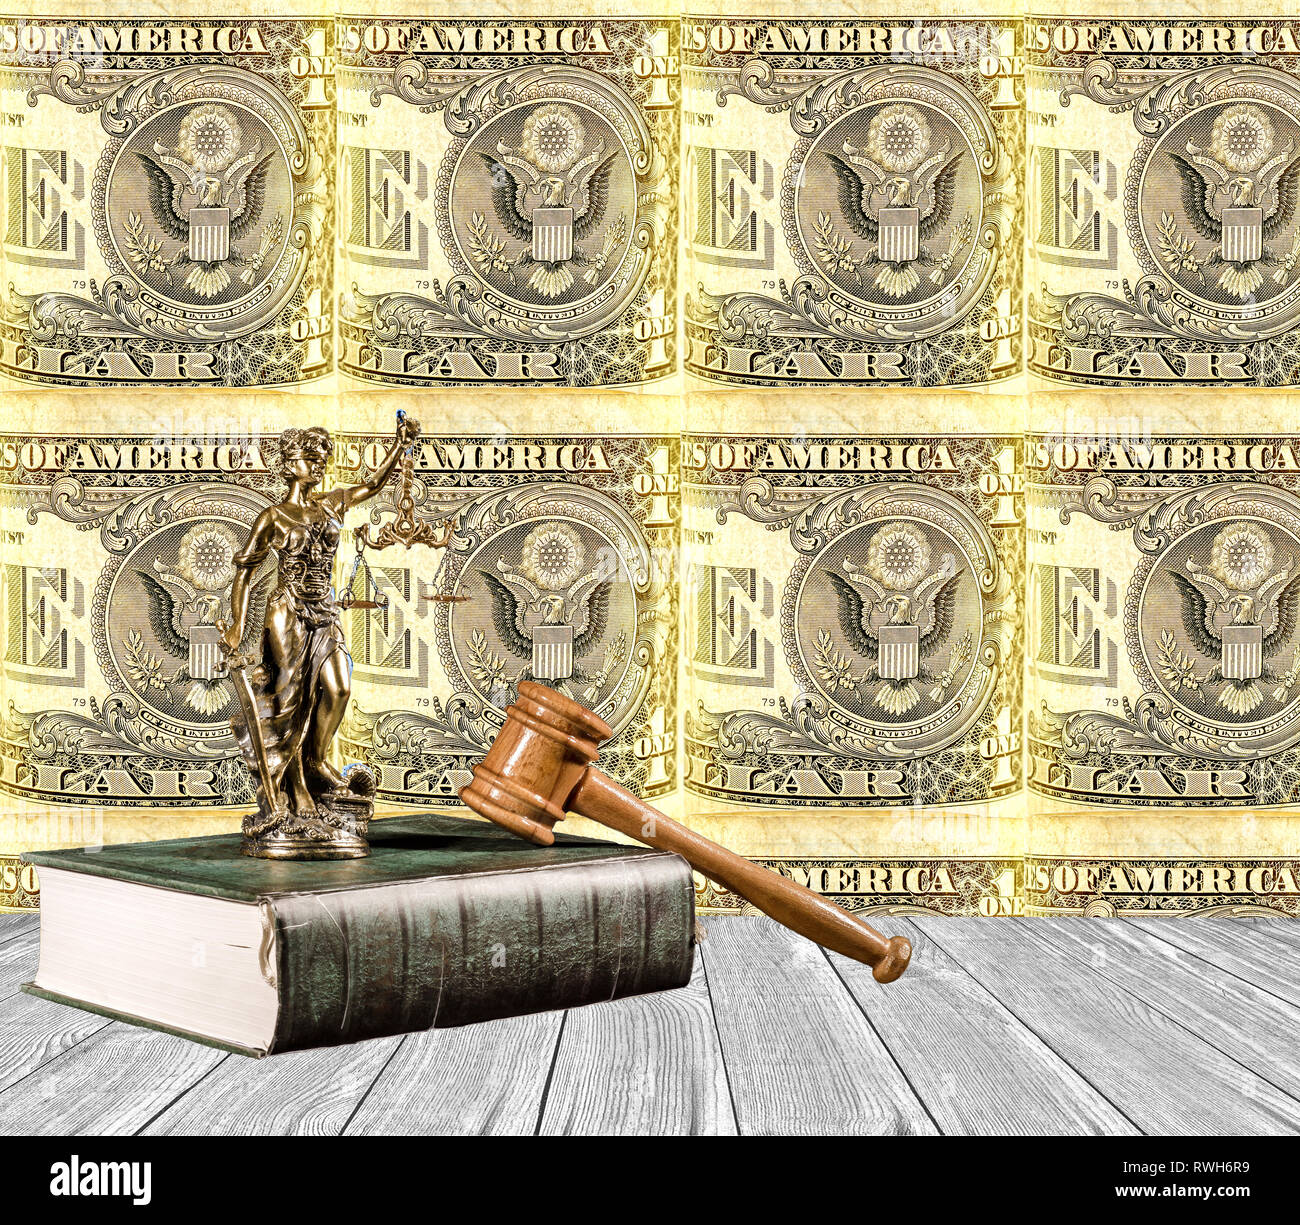 Justitia statues sur le livre avec marteau judiciaire avec un plancher en bois et enroulé de billet de 1 dollar américain comme un arrière-plan Banque D'Images